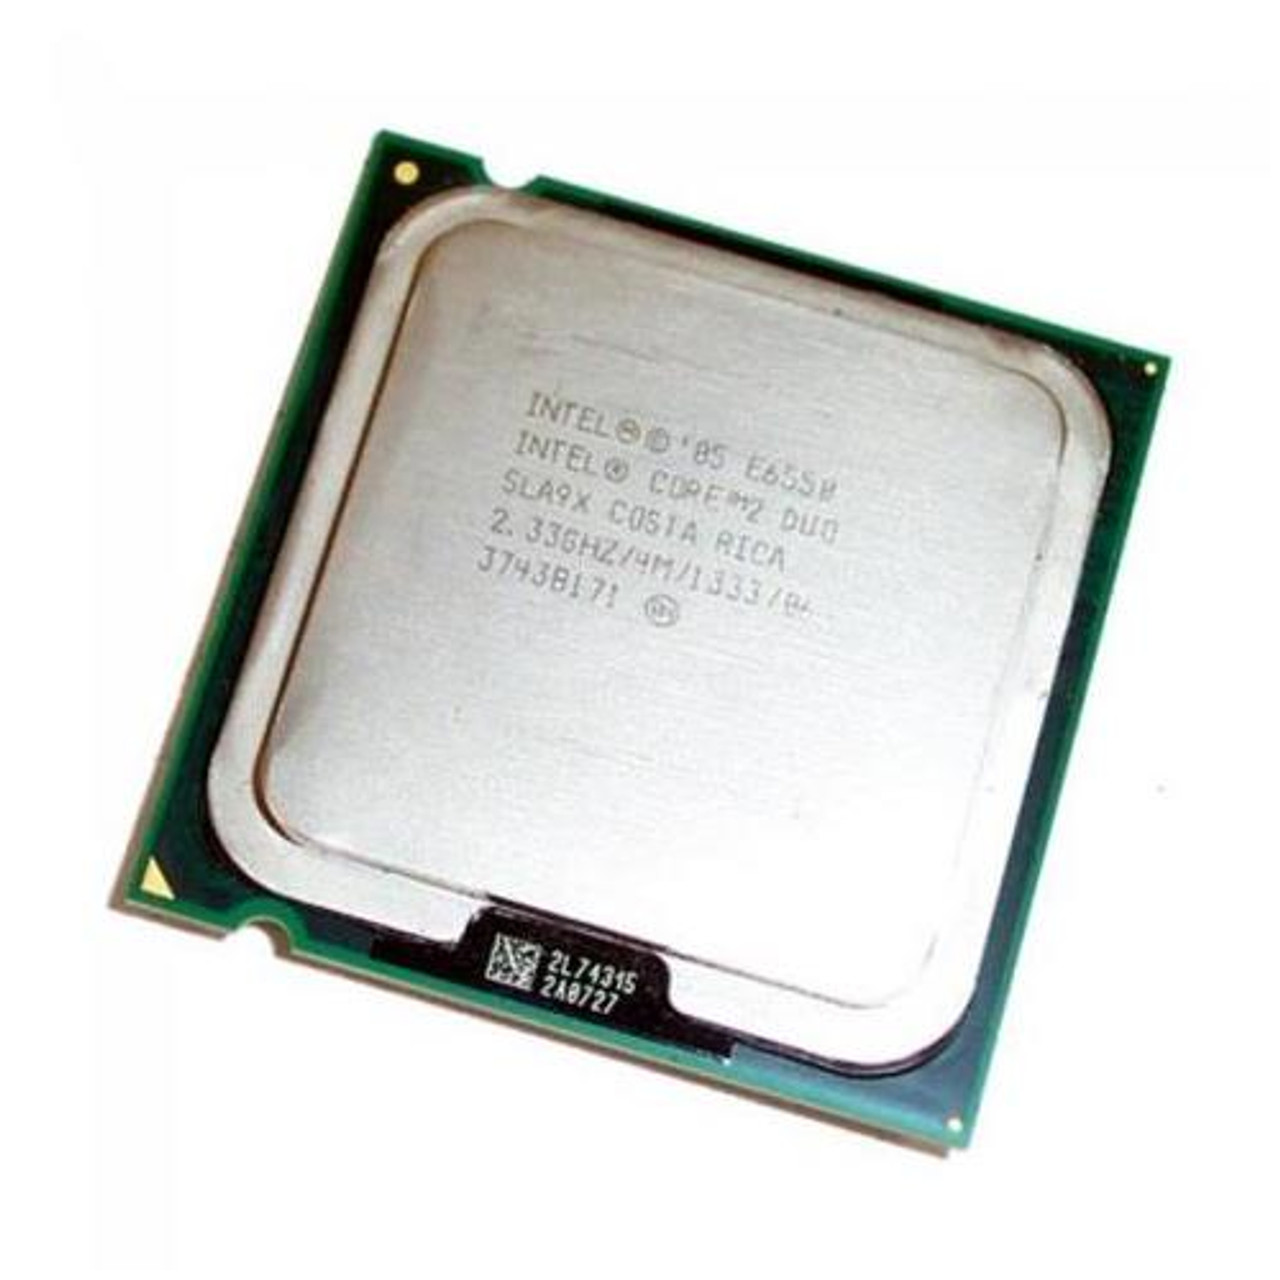 Интел селерон характеристики. E6850 Core 2 Duo. Intel 04 Celeron d 2.66GHZ/256/533. Intel Core 2 Duo e8400. Процессор Intel Celeron d.